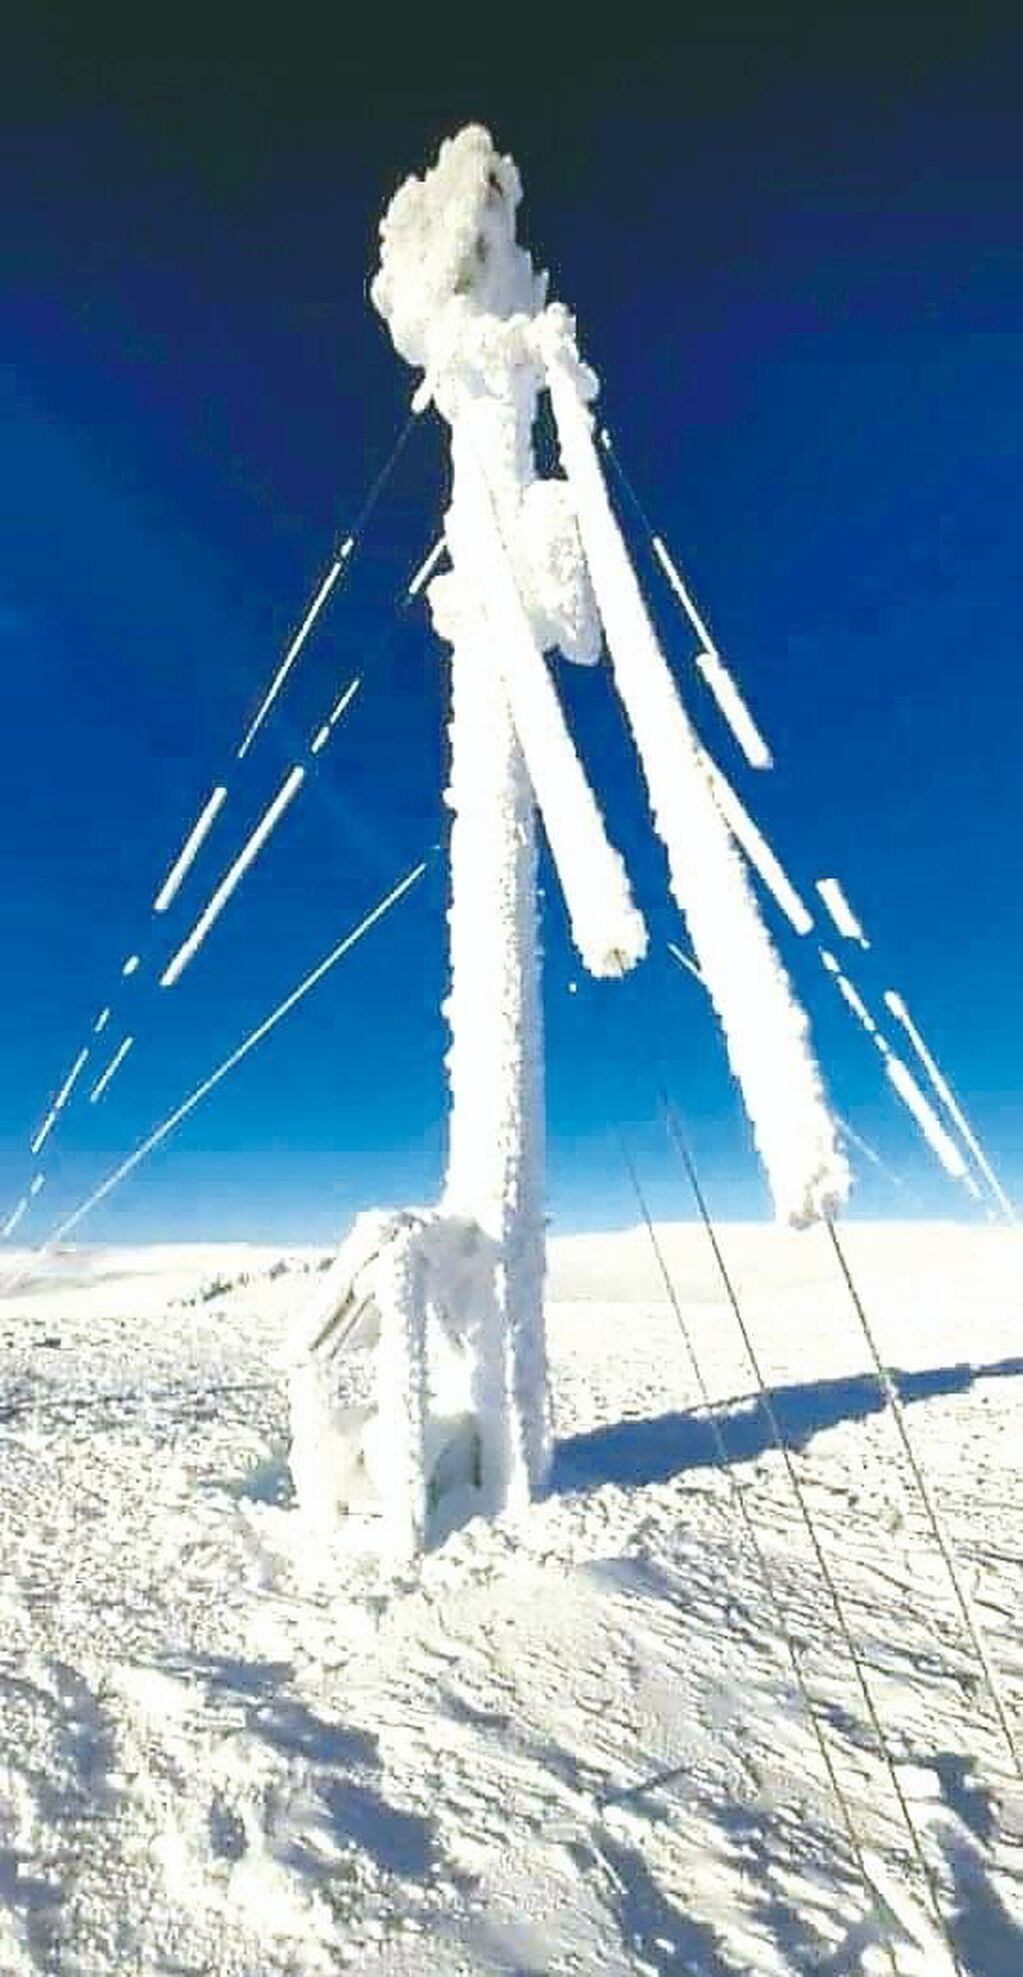 La antena, congelada y cubierta de nieve.